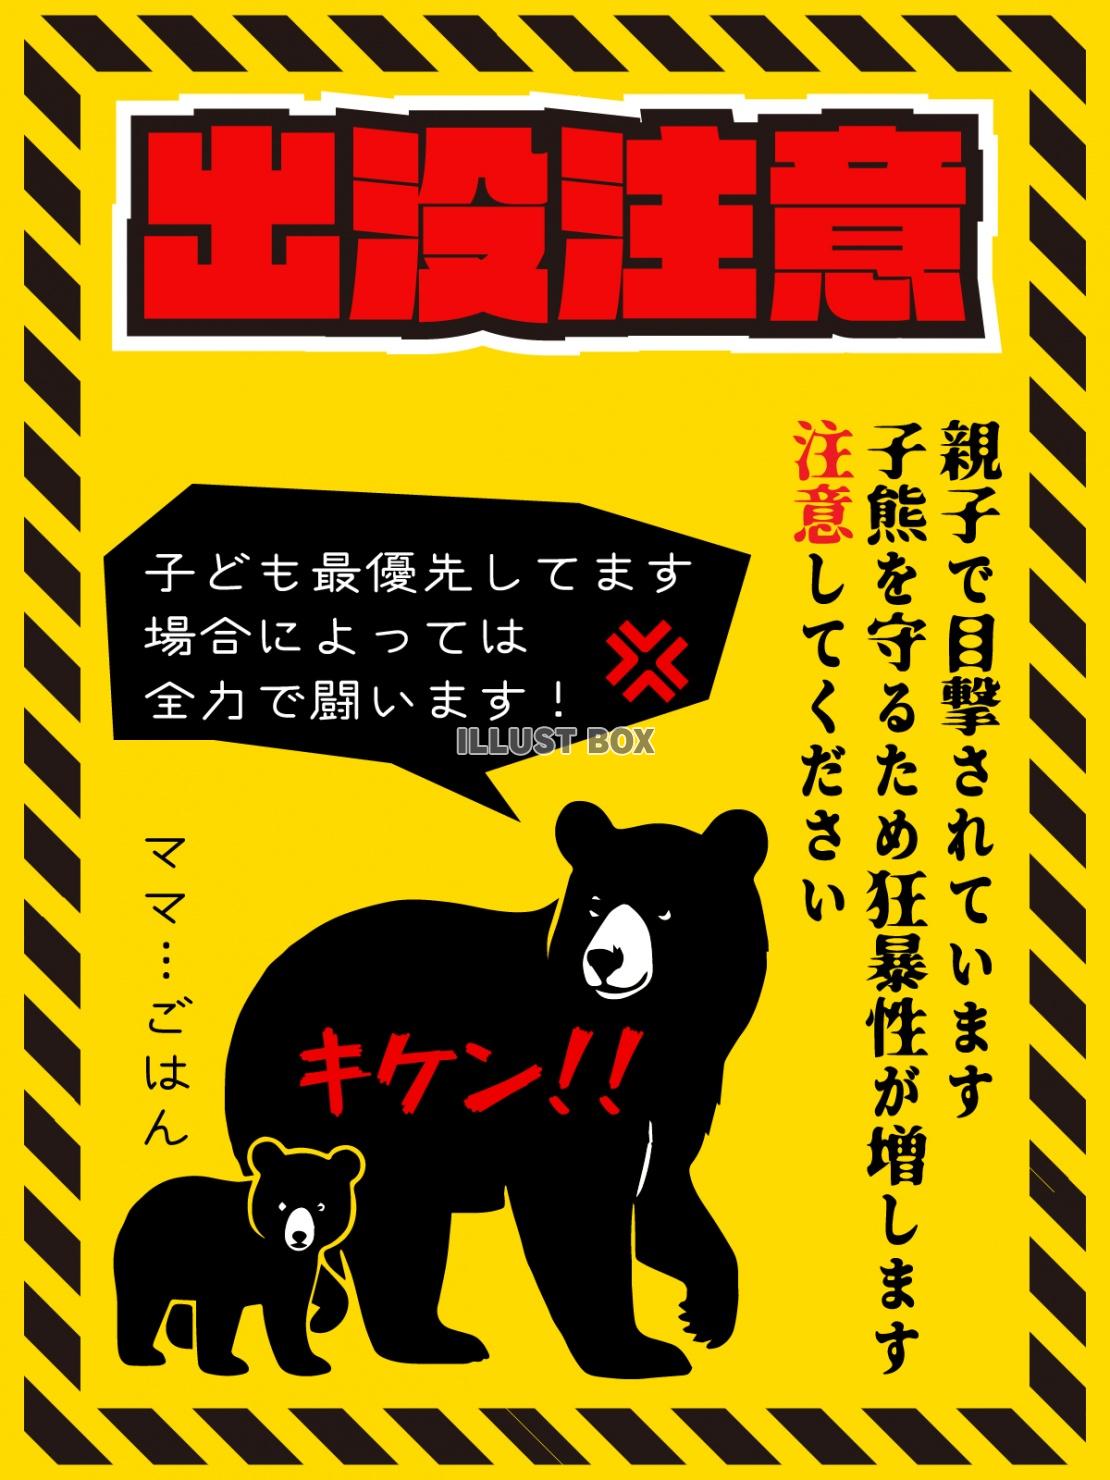 親子クマ出没注意のポスター縦型のデザイン